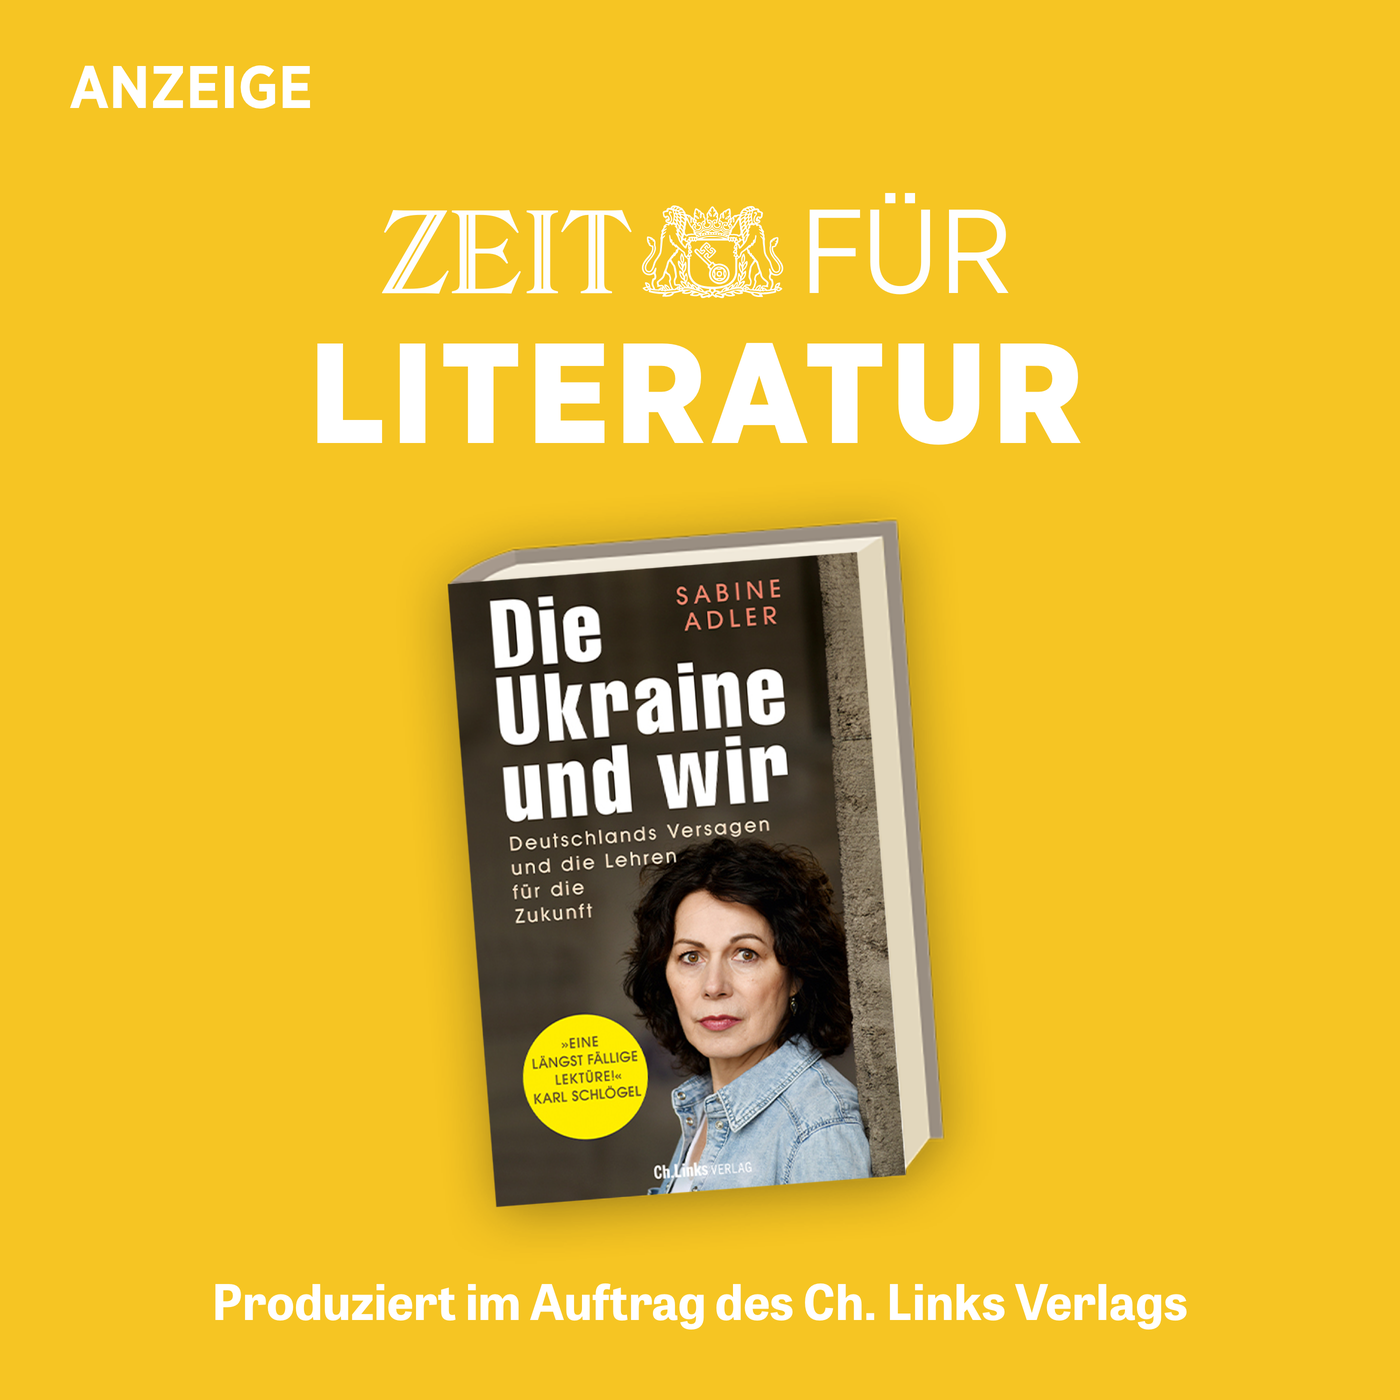 ZEIT für Literatur mit Sabine Adler